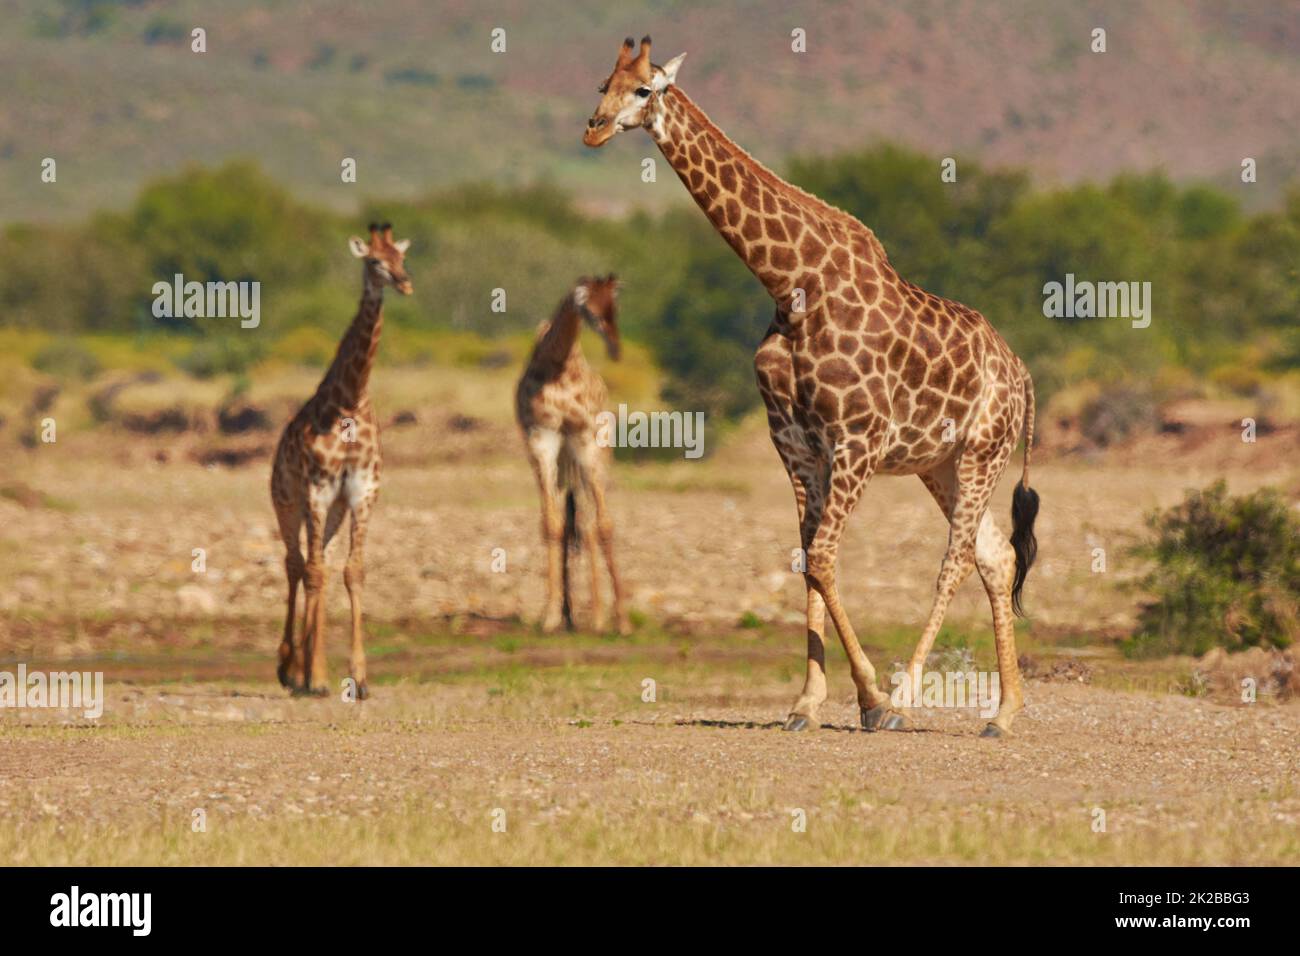 Mi chieda informazioni sulla migliore visione. Un colpo di giraffa nel suo habitat naturale. Foto Stock